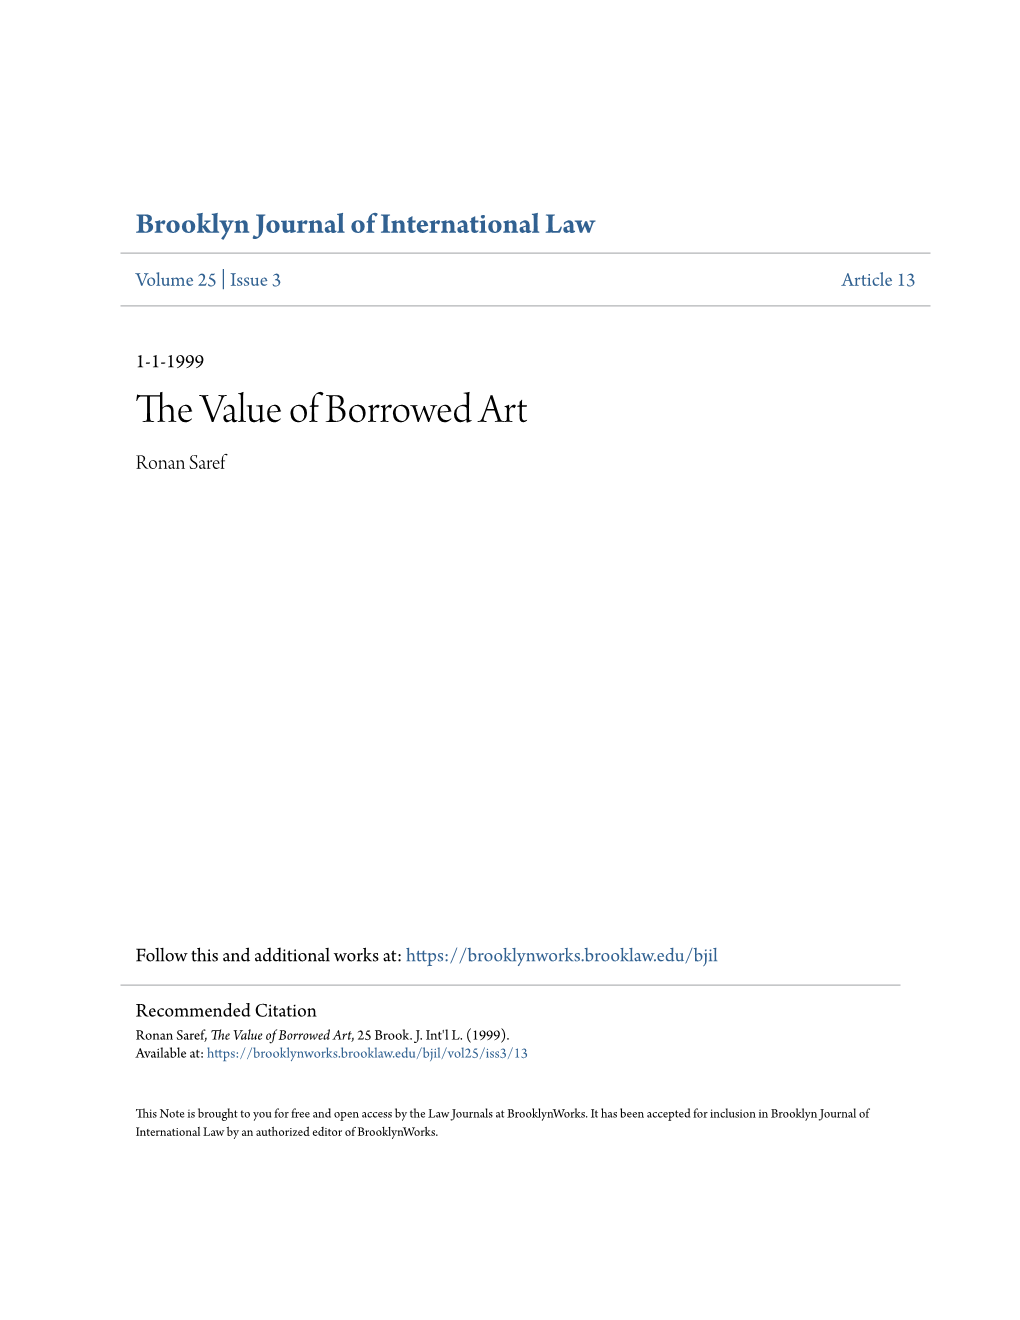 The Value of Borrowed Art, 25 Brook